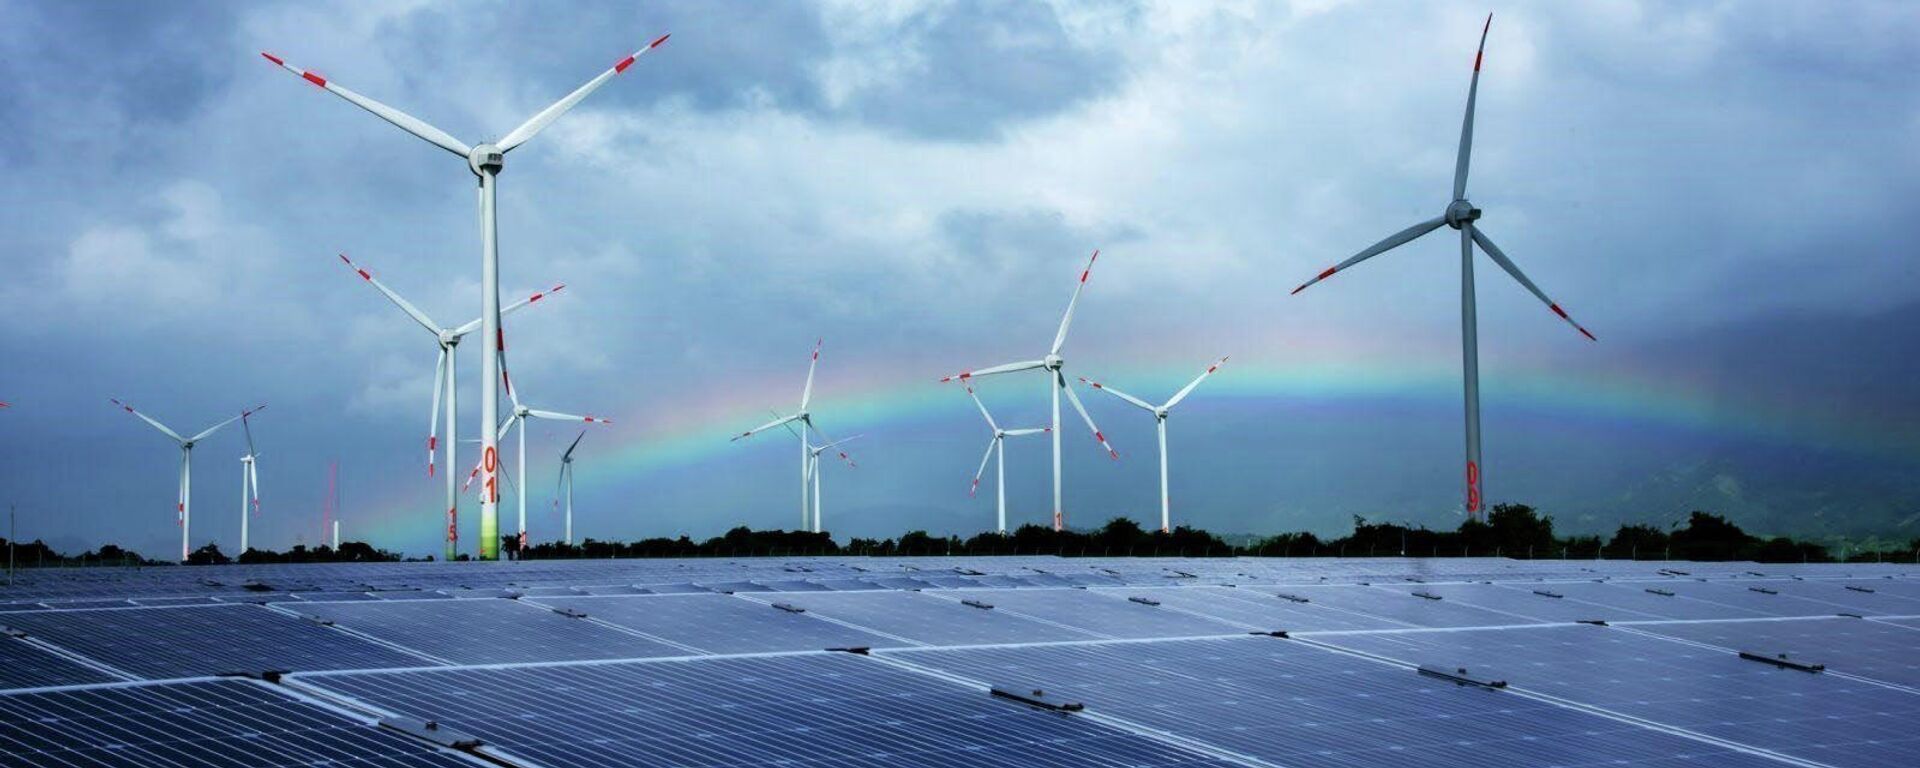 Từng bước thực hiện chủ trương xây dựng Ninh Thuận trở thành Trung tâm Năng lượng tái tạo của cả nước, đến nay, UBND tỉnh Ninh Thuận đã cấp quyết định chủ trương đầu tư cho 37 dự án điện mặt trời và 15 dự án điện gió với tổng công suất trên 3.342 MW - Sputnik Việt Nam, 1920, 15.02.2022